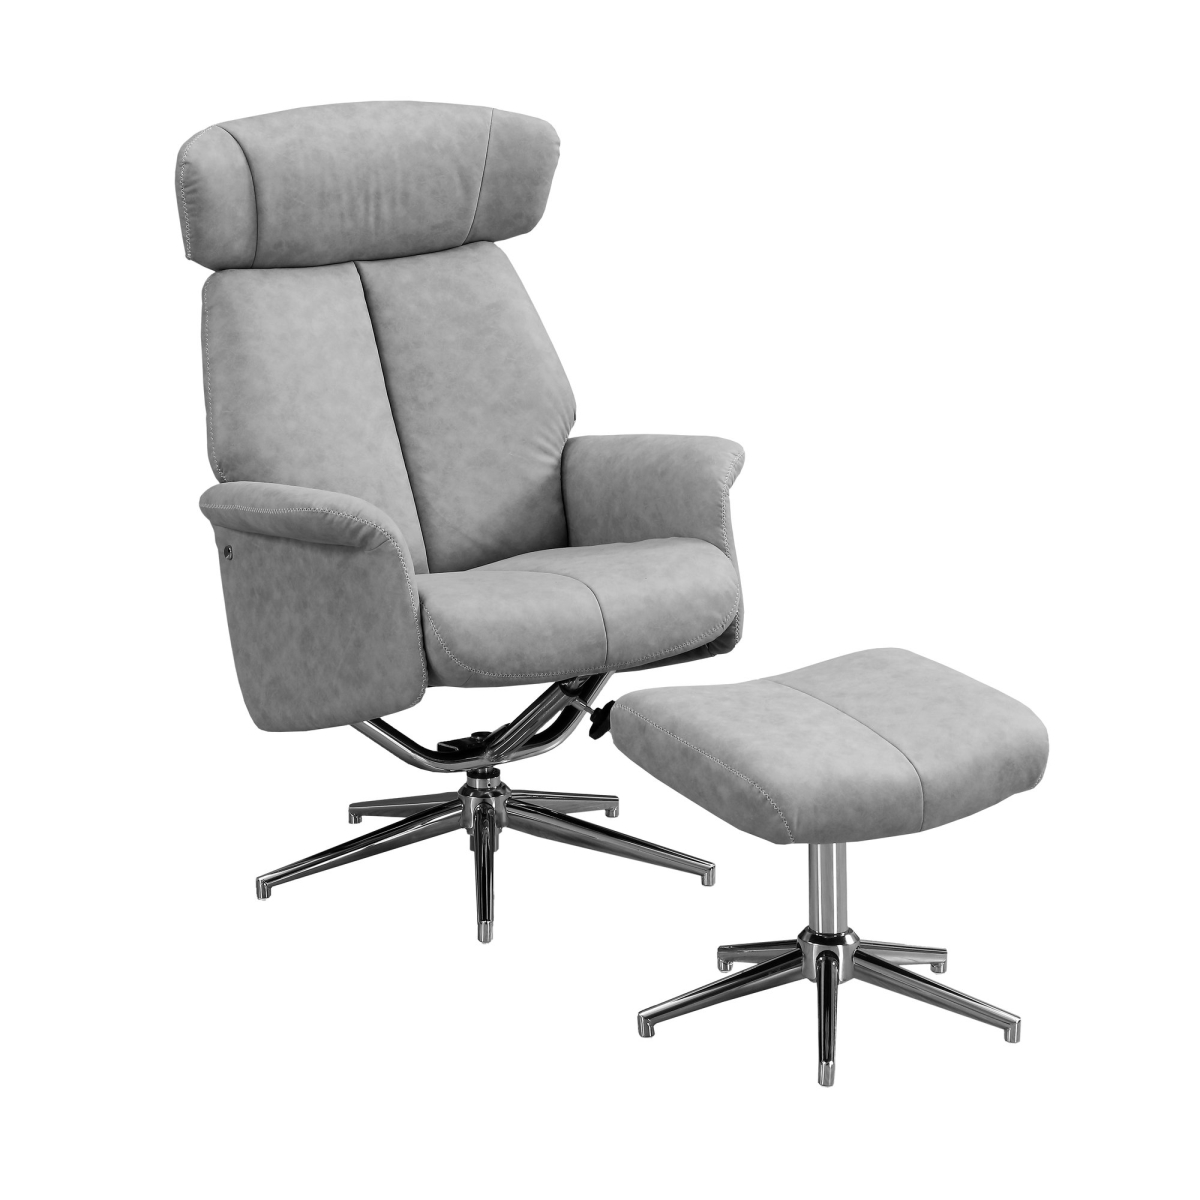 Recliner - 2 Piece Set & Grey Swivel - Adjustable Headrest